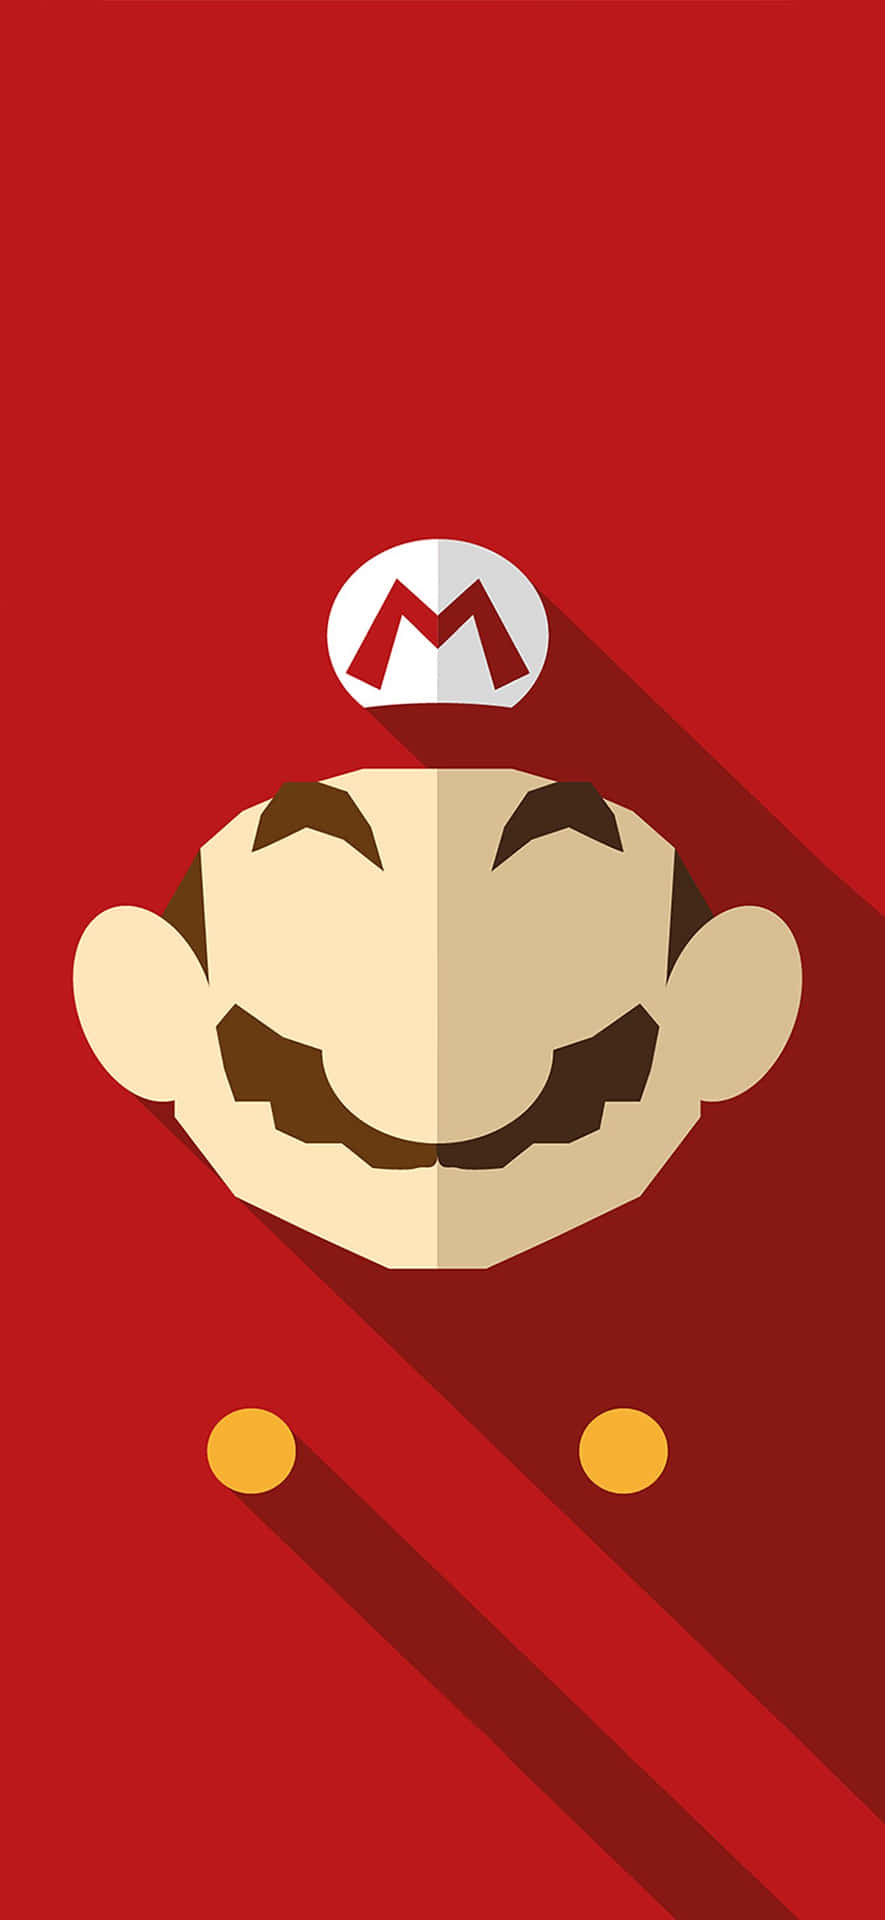 Desbloqueanuevos Mundos Con El Super Mario Para Iphone. Fondo de pantalla